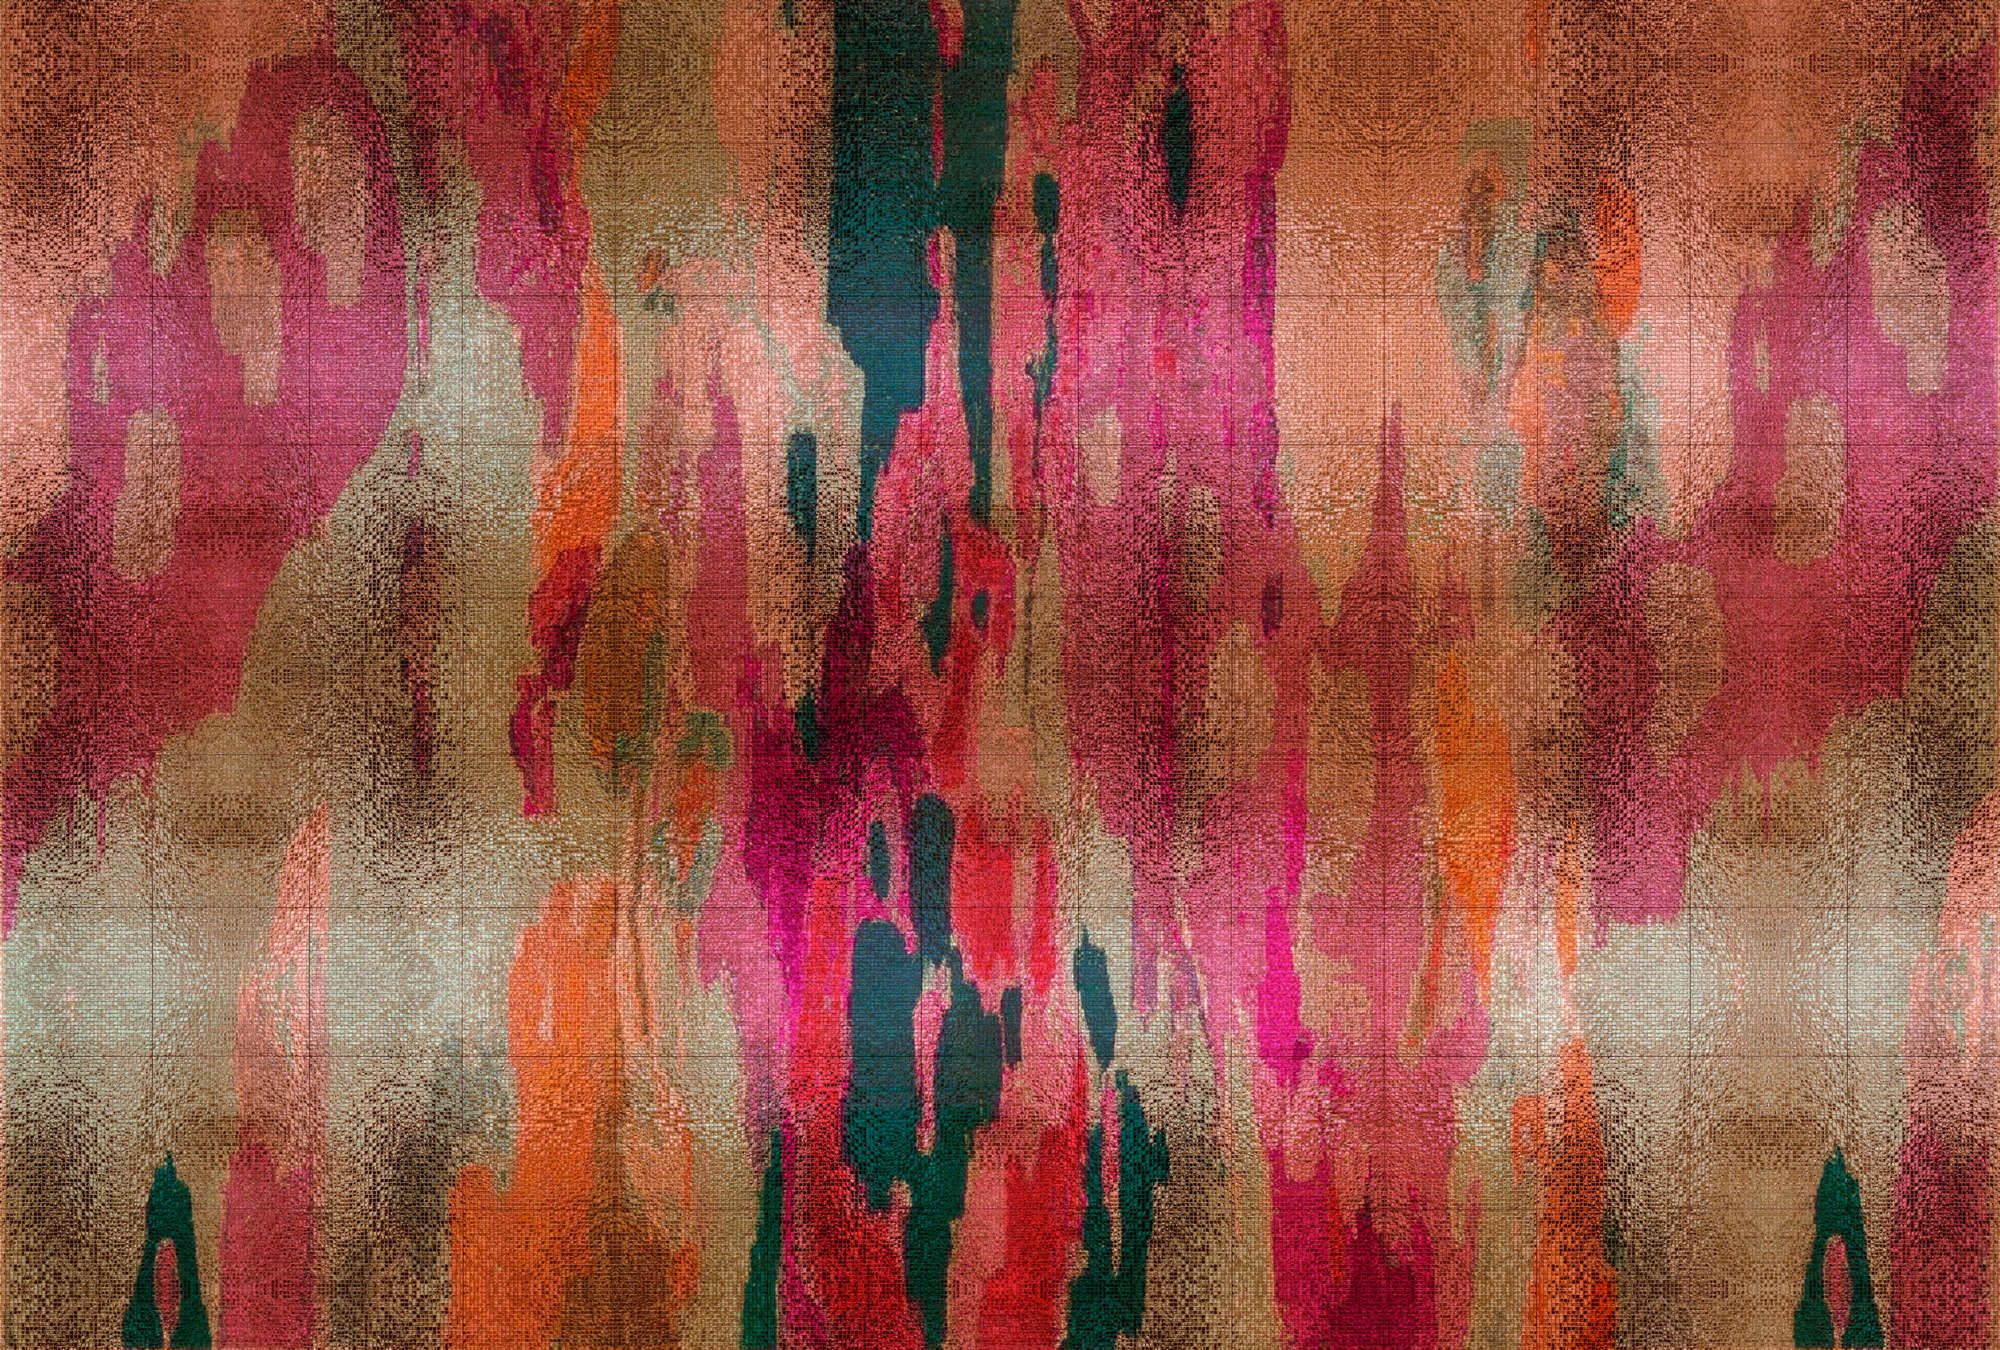             Fotomurali »marielle 2« - Gradienti di colore viola, arancione, petrolio con struttura a mosaico - Materiali non tessuto liscio, leggermente perlato e scintillante
        